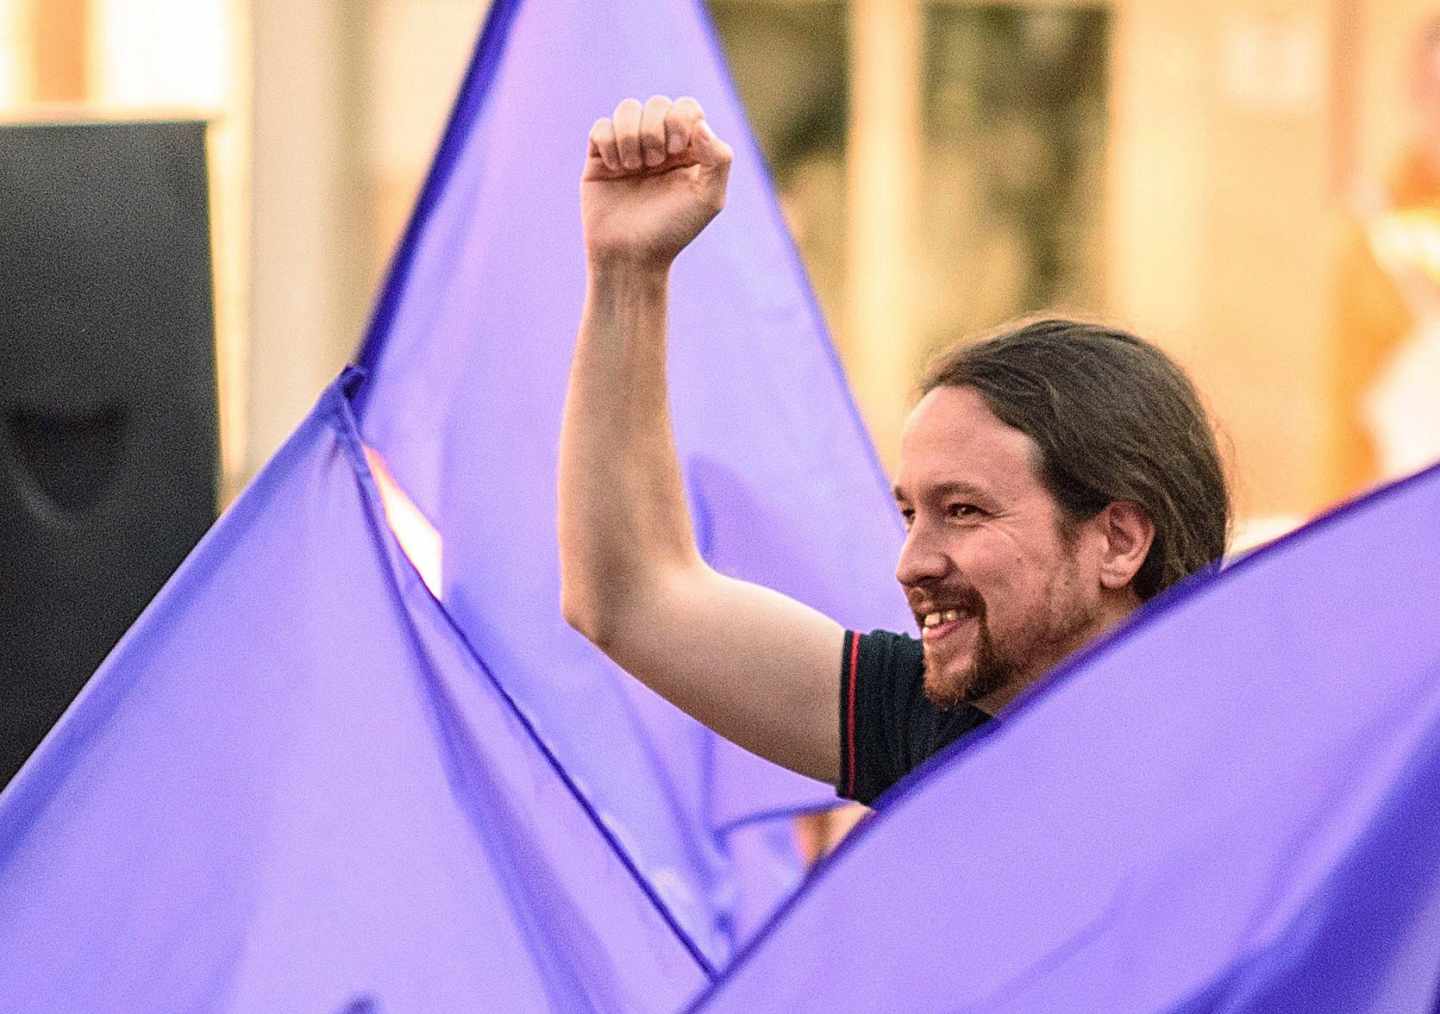 Iglesias permitió 'espionaje' dentro de Podemos antes de las generales de 2015